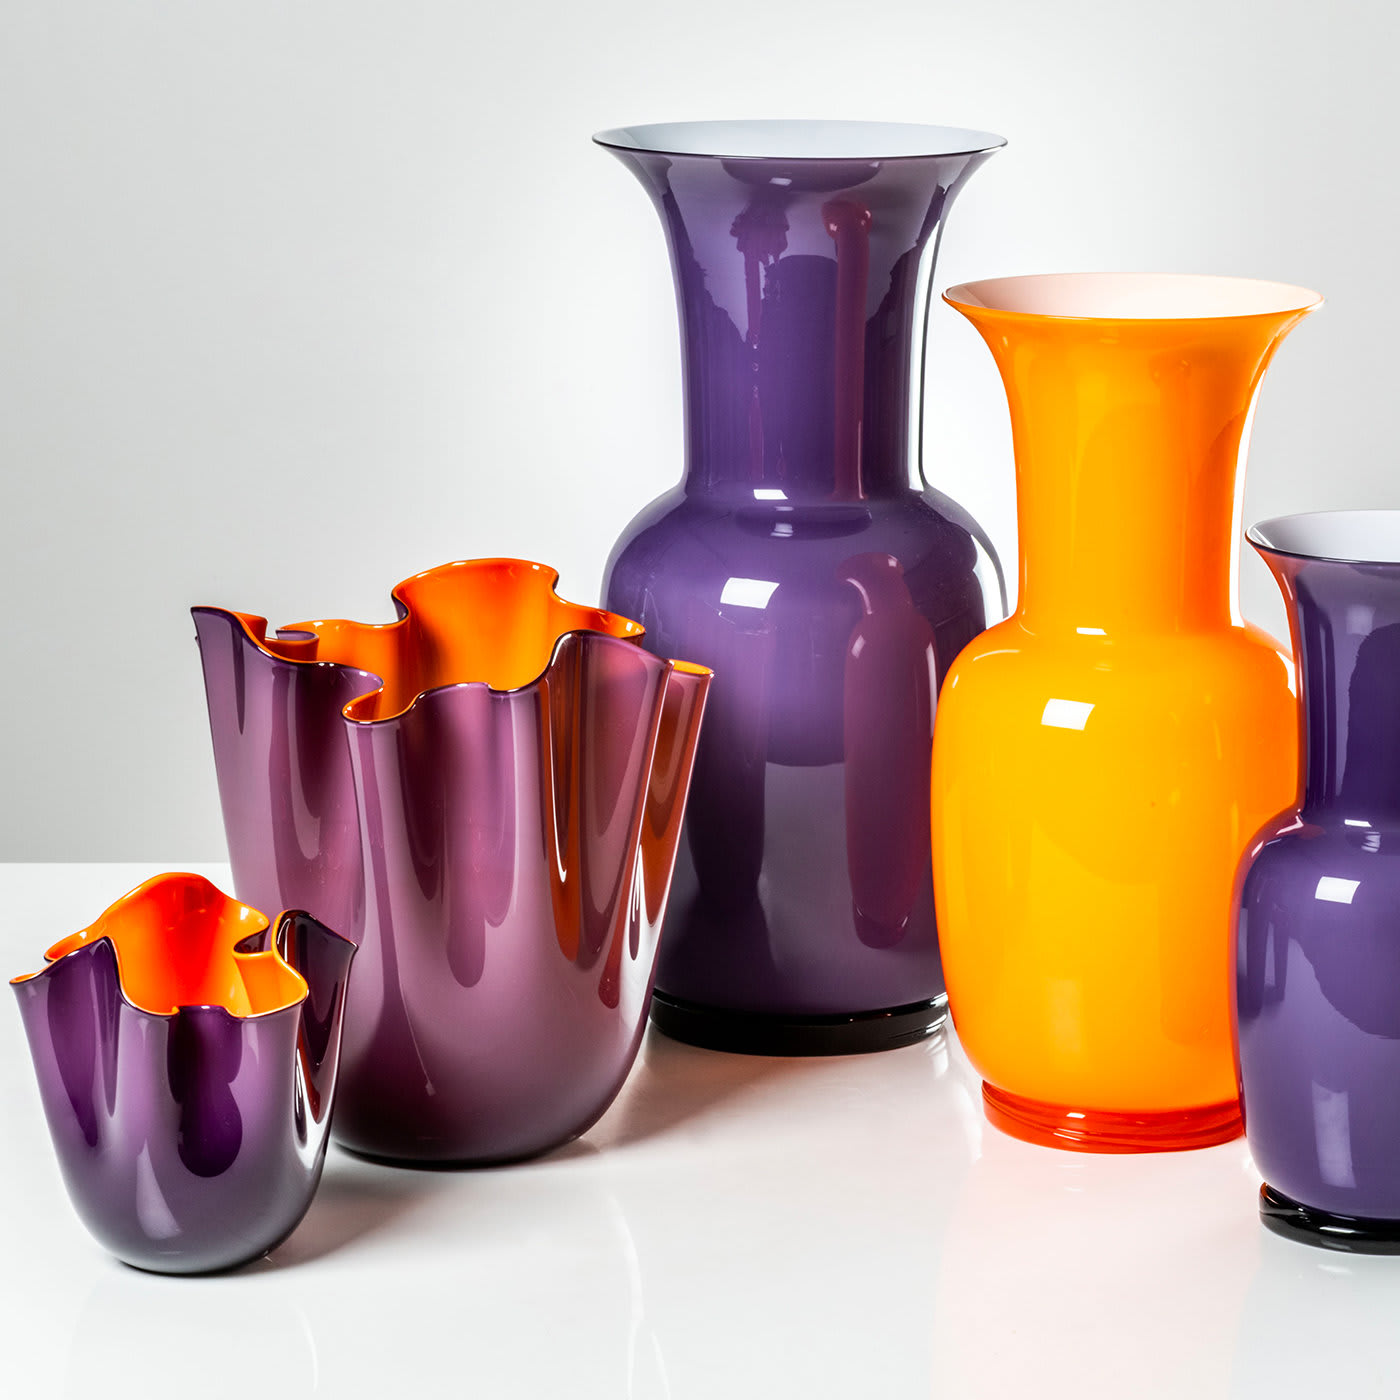 Fazzoletti Purple/Orange Vase by Fulvio Bianconi - Venini